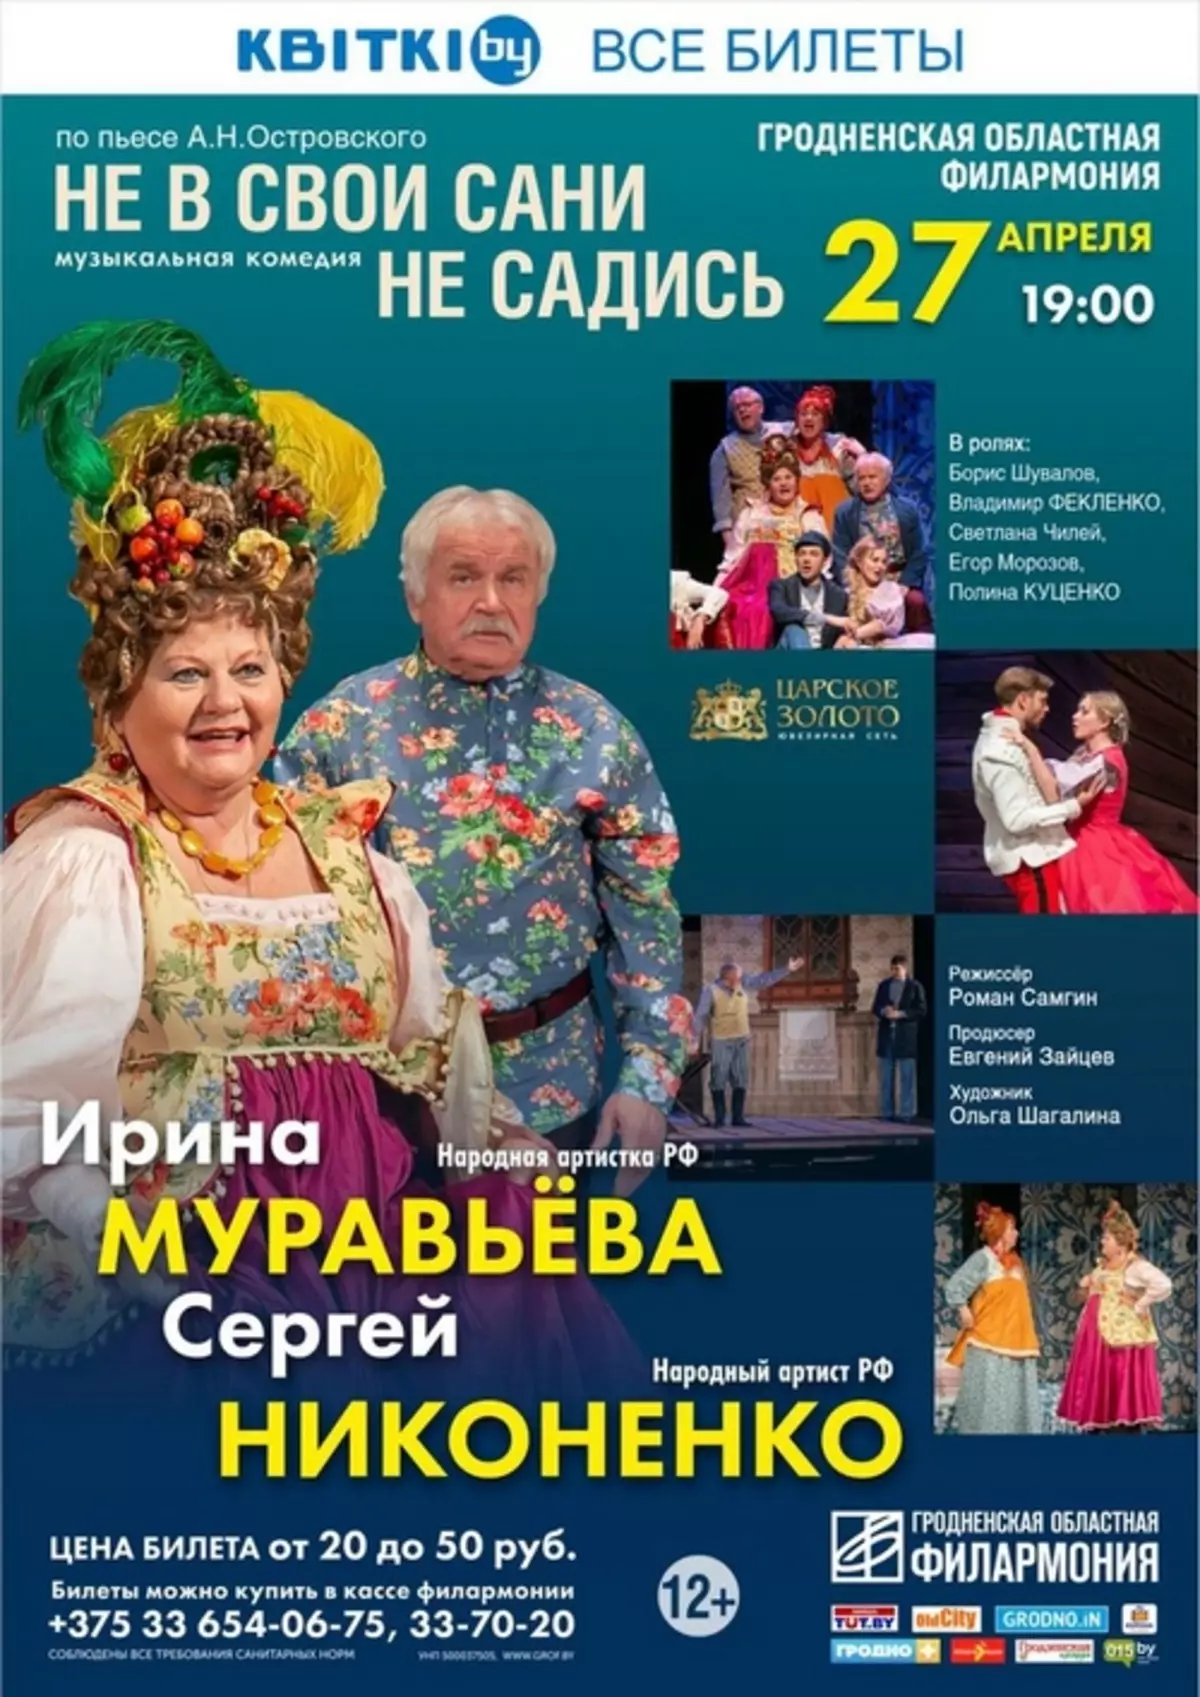 Plakat događaja u Grodnom od 26. marta do 1. aprila 3097_12